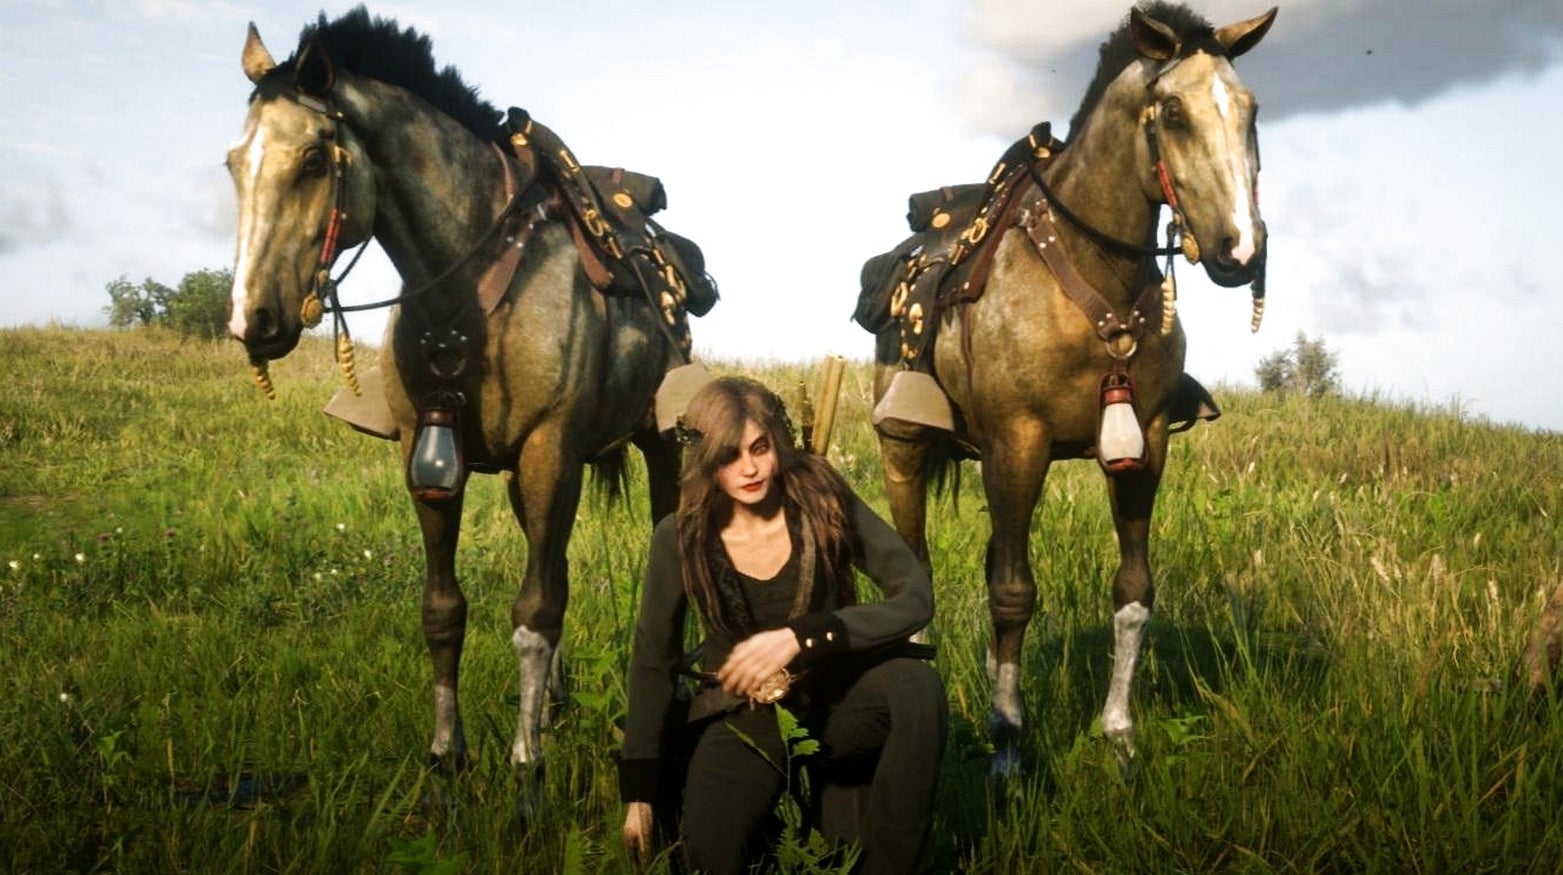 Bilder zu Red Dead Onlines Pferde drehen seit dem neuesten Update durch, sagen Fans